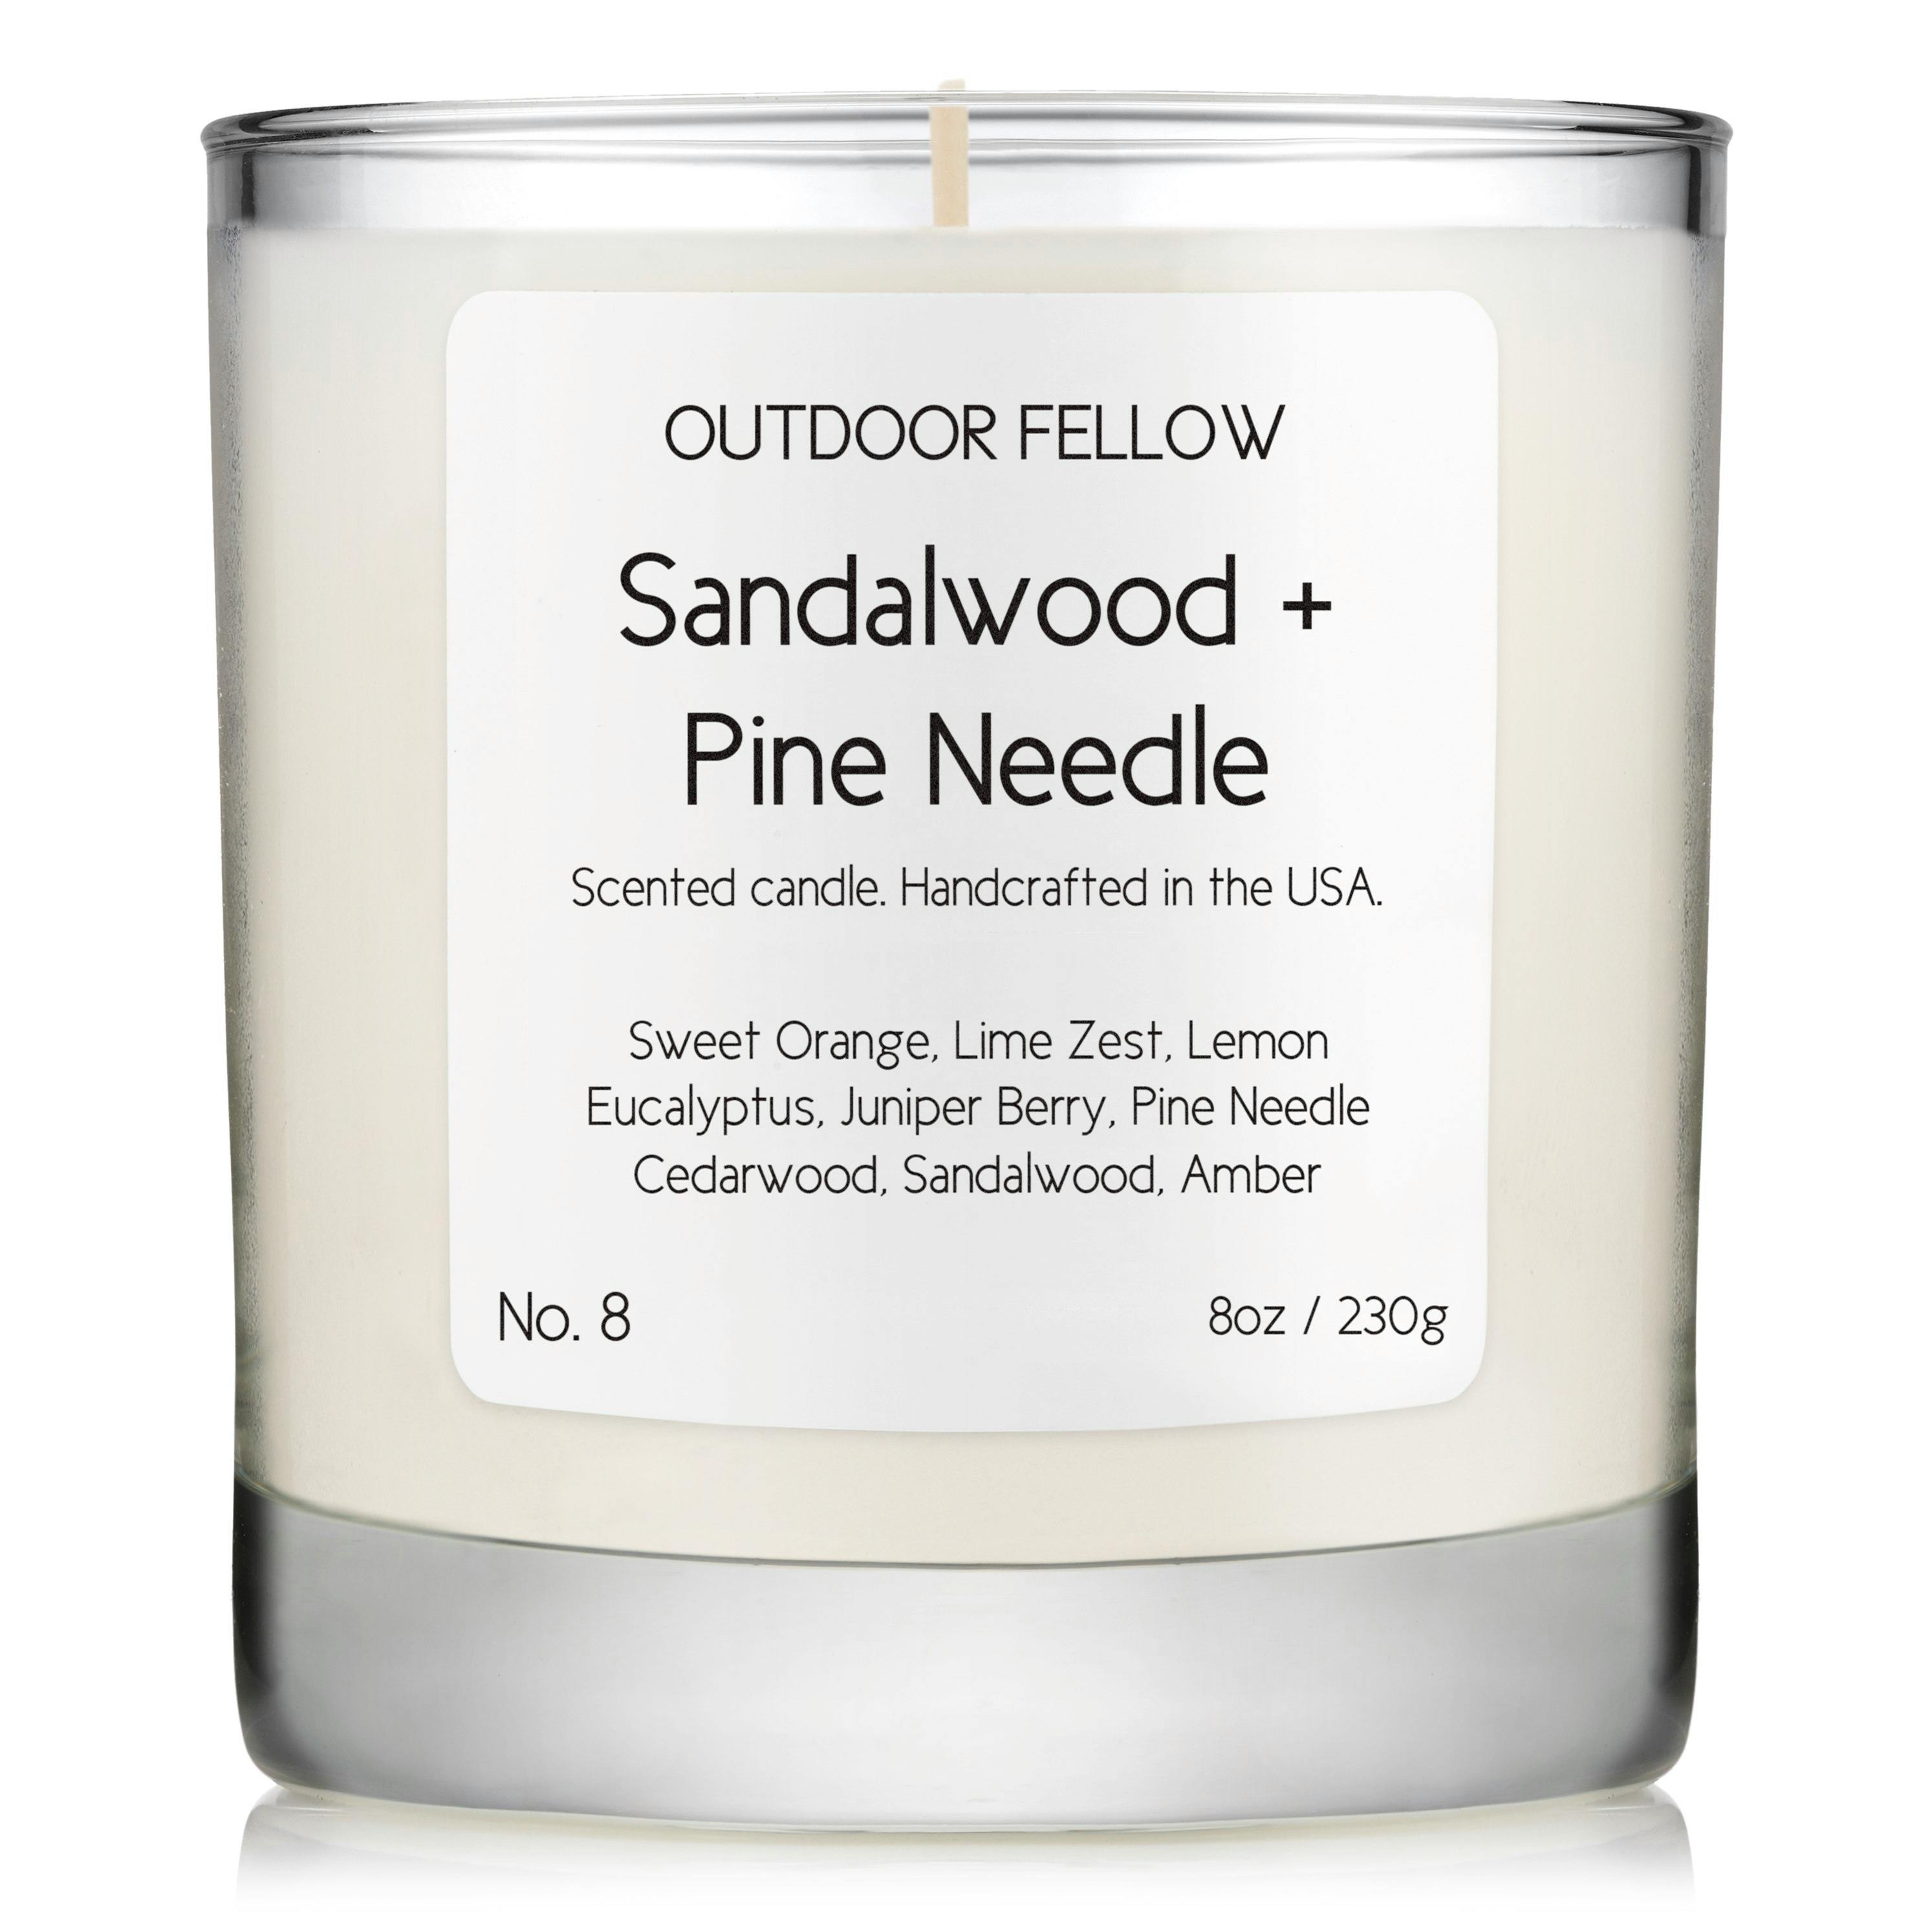 No. 8 Sandalwood + Pine Needle Candle